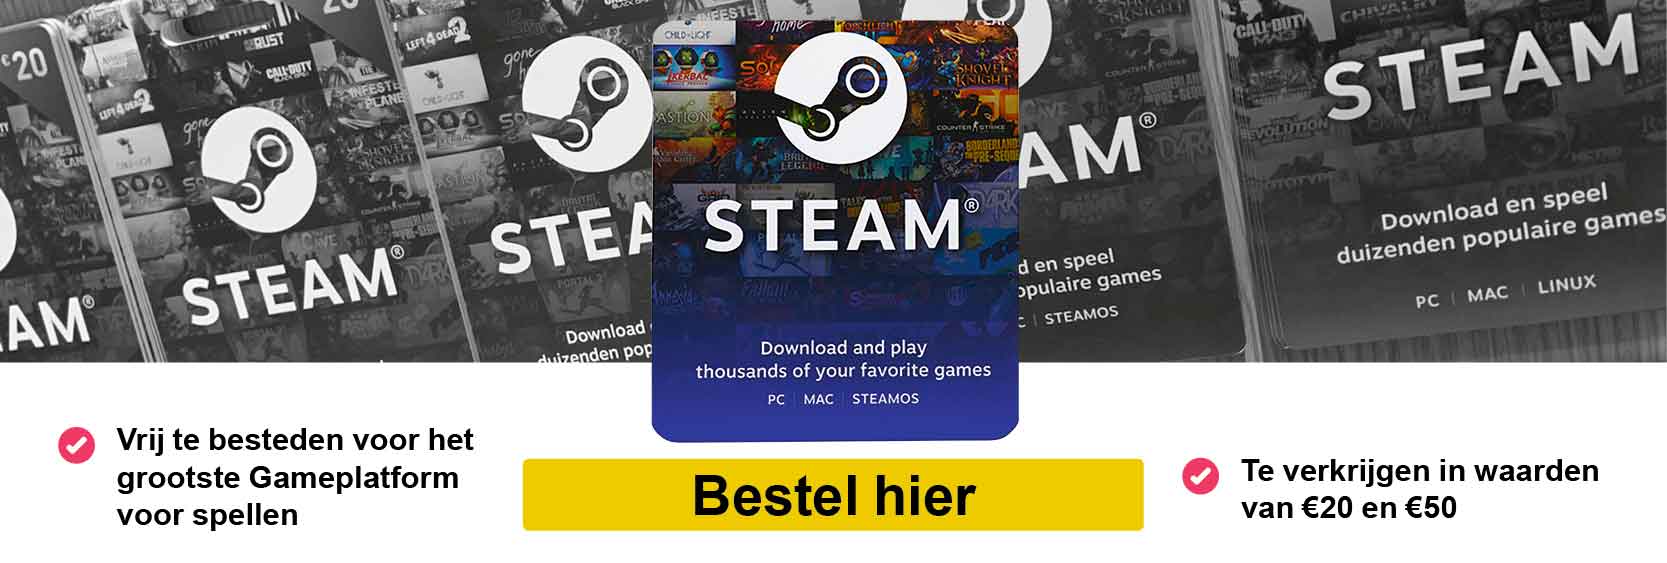 Steam Cadeaukaarten | Cadeaubonnen van Steam Steamcard